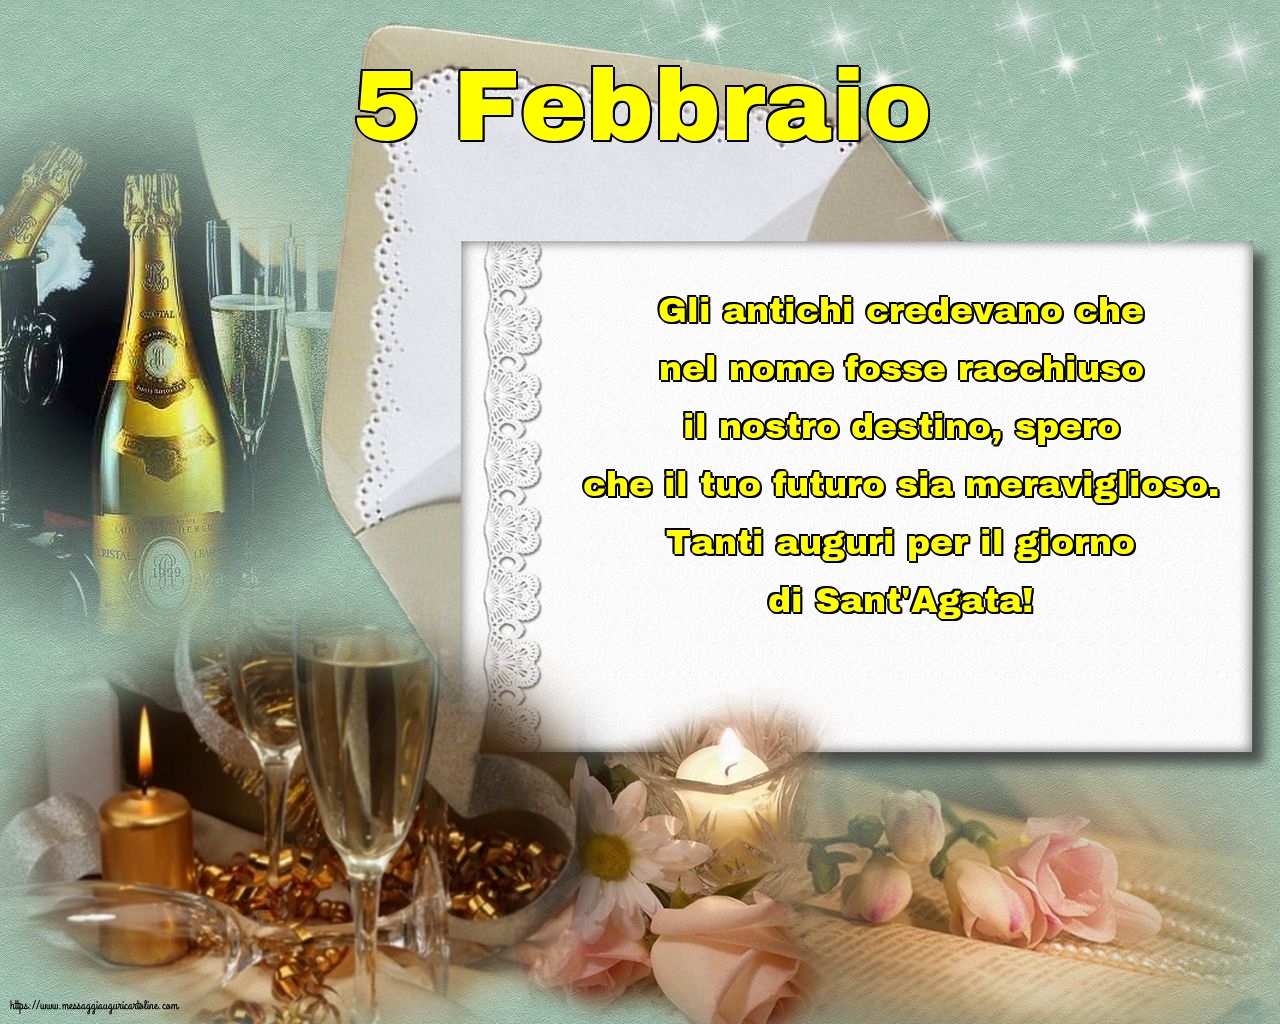 5 Febbraio - 5 Febbraio - Tanti auguri per il giorno di Sant'Agata!